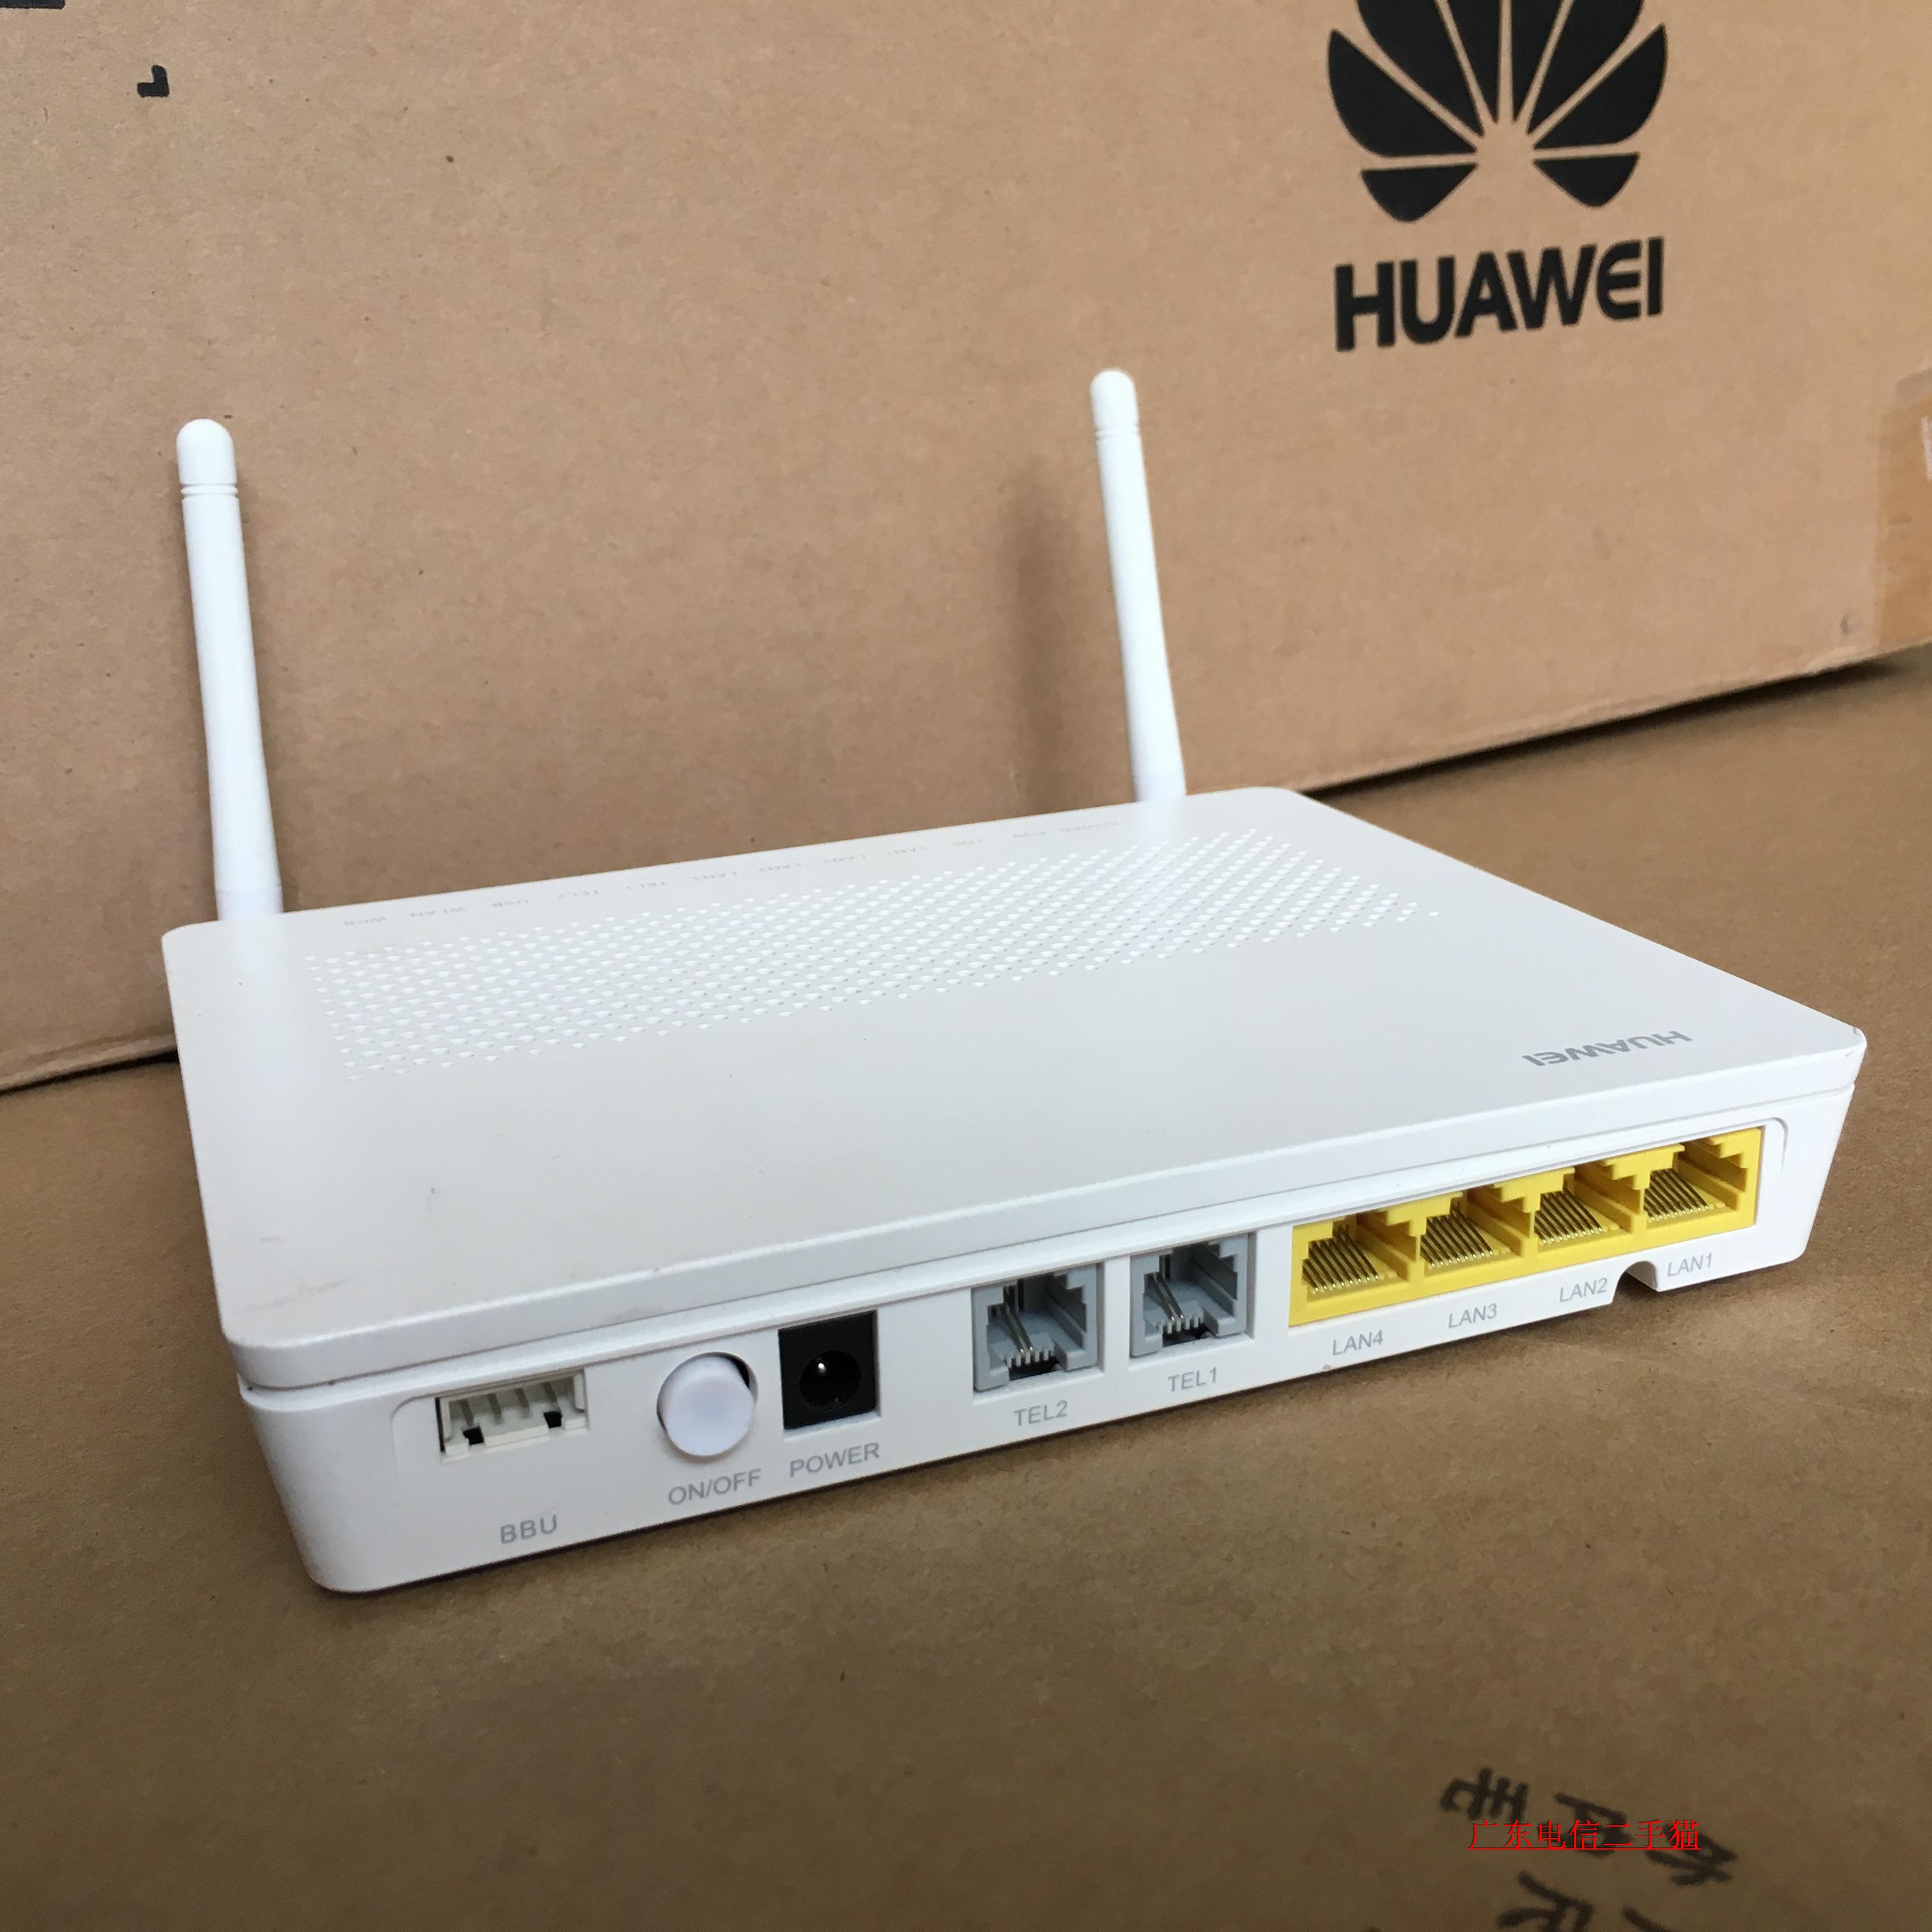 Ростелеком роутер купить для интернета и wifi. Роутер Huawei hg8245h. WIFI роутер Huawei ECHOLIFE hg8245h. Huawei ECHOLIFE hg8245 GPON роутер Wi-Fi. Оптический терминал Huawei hg8245h.